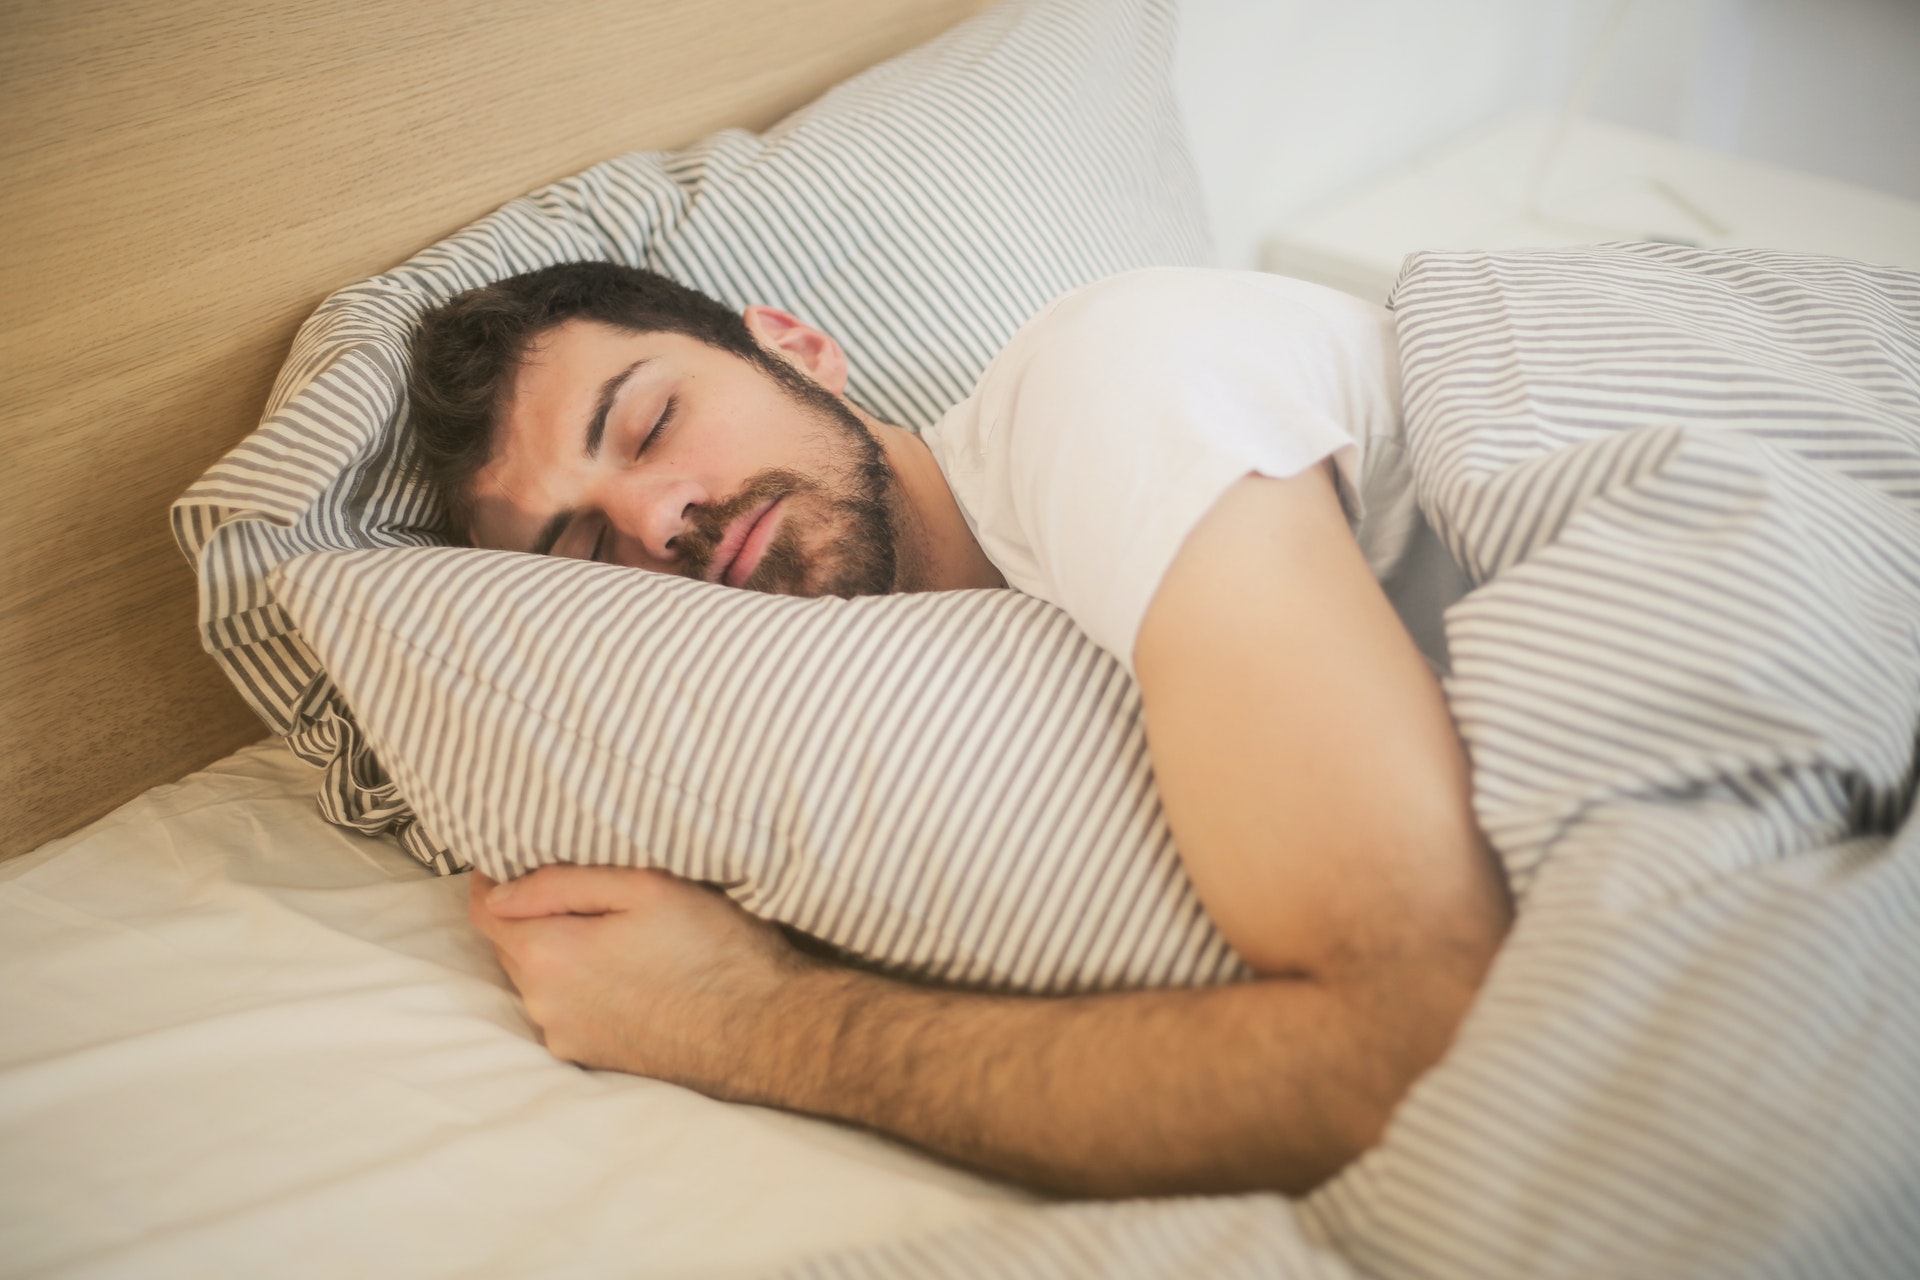 Mantener una adecuada higiene del sueño es esencial para un buen descanso nocturno y para evitar episodios de terrores nocturnos.